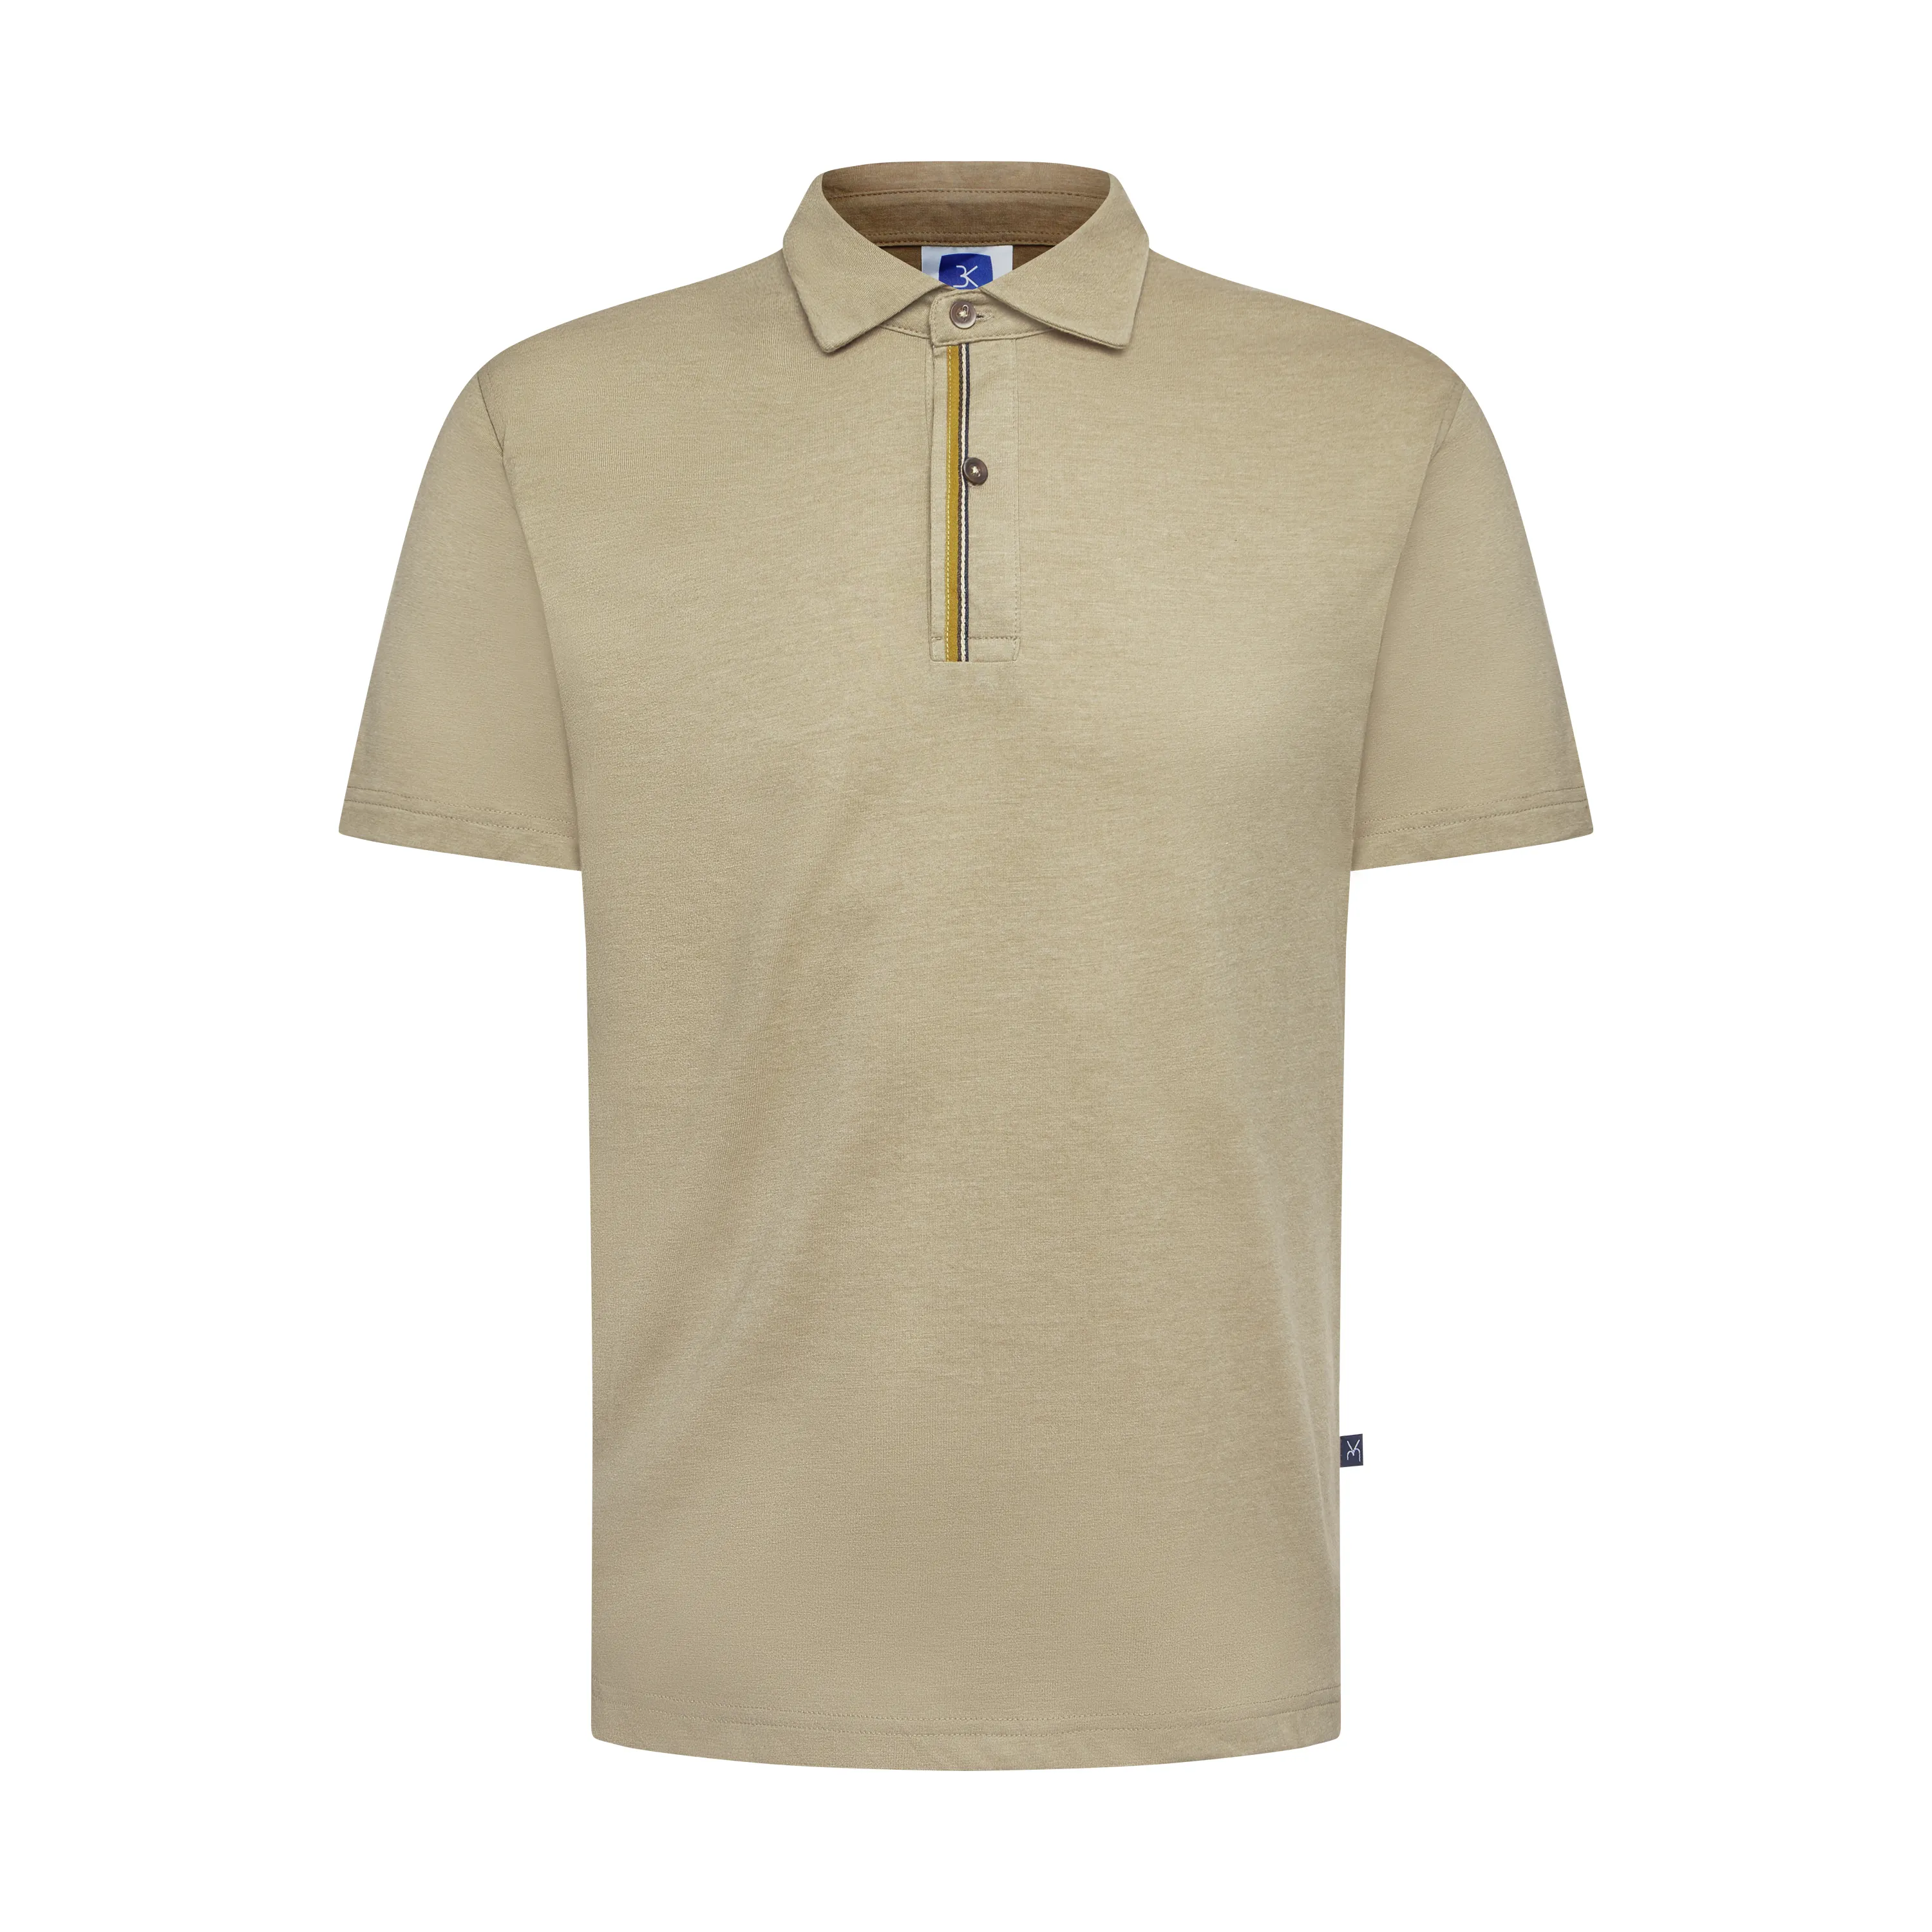 남성용 폴로 셔츠 합리적인 가격 폴로 셔츠 유니폼 사무실 유니폼 디자인 폴로 셔츠 탄 팸 기아 남성 베트남 제조 업체